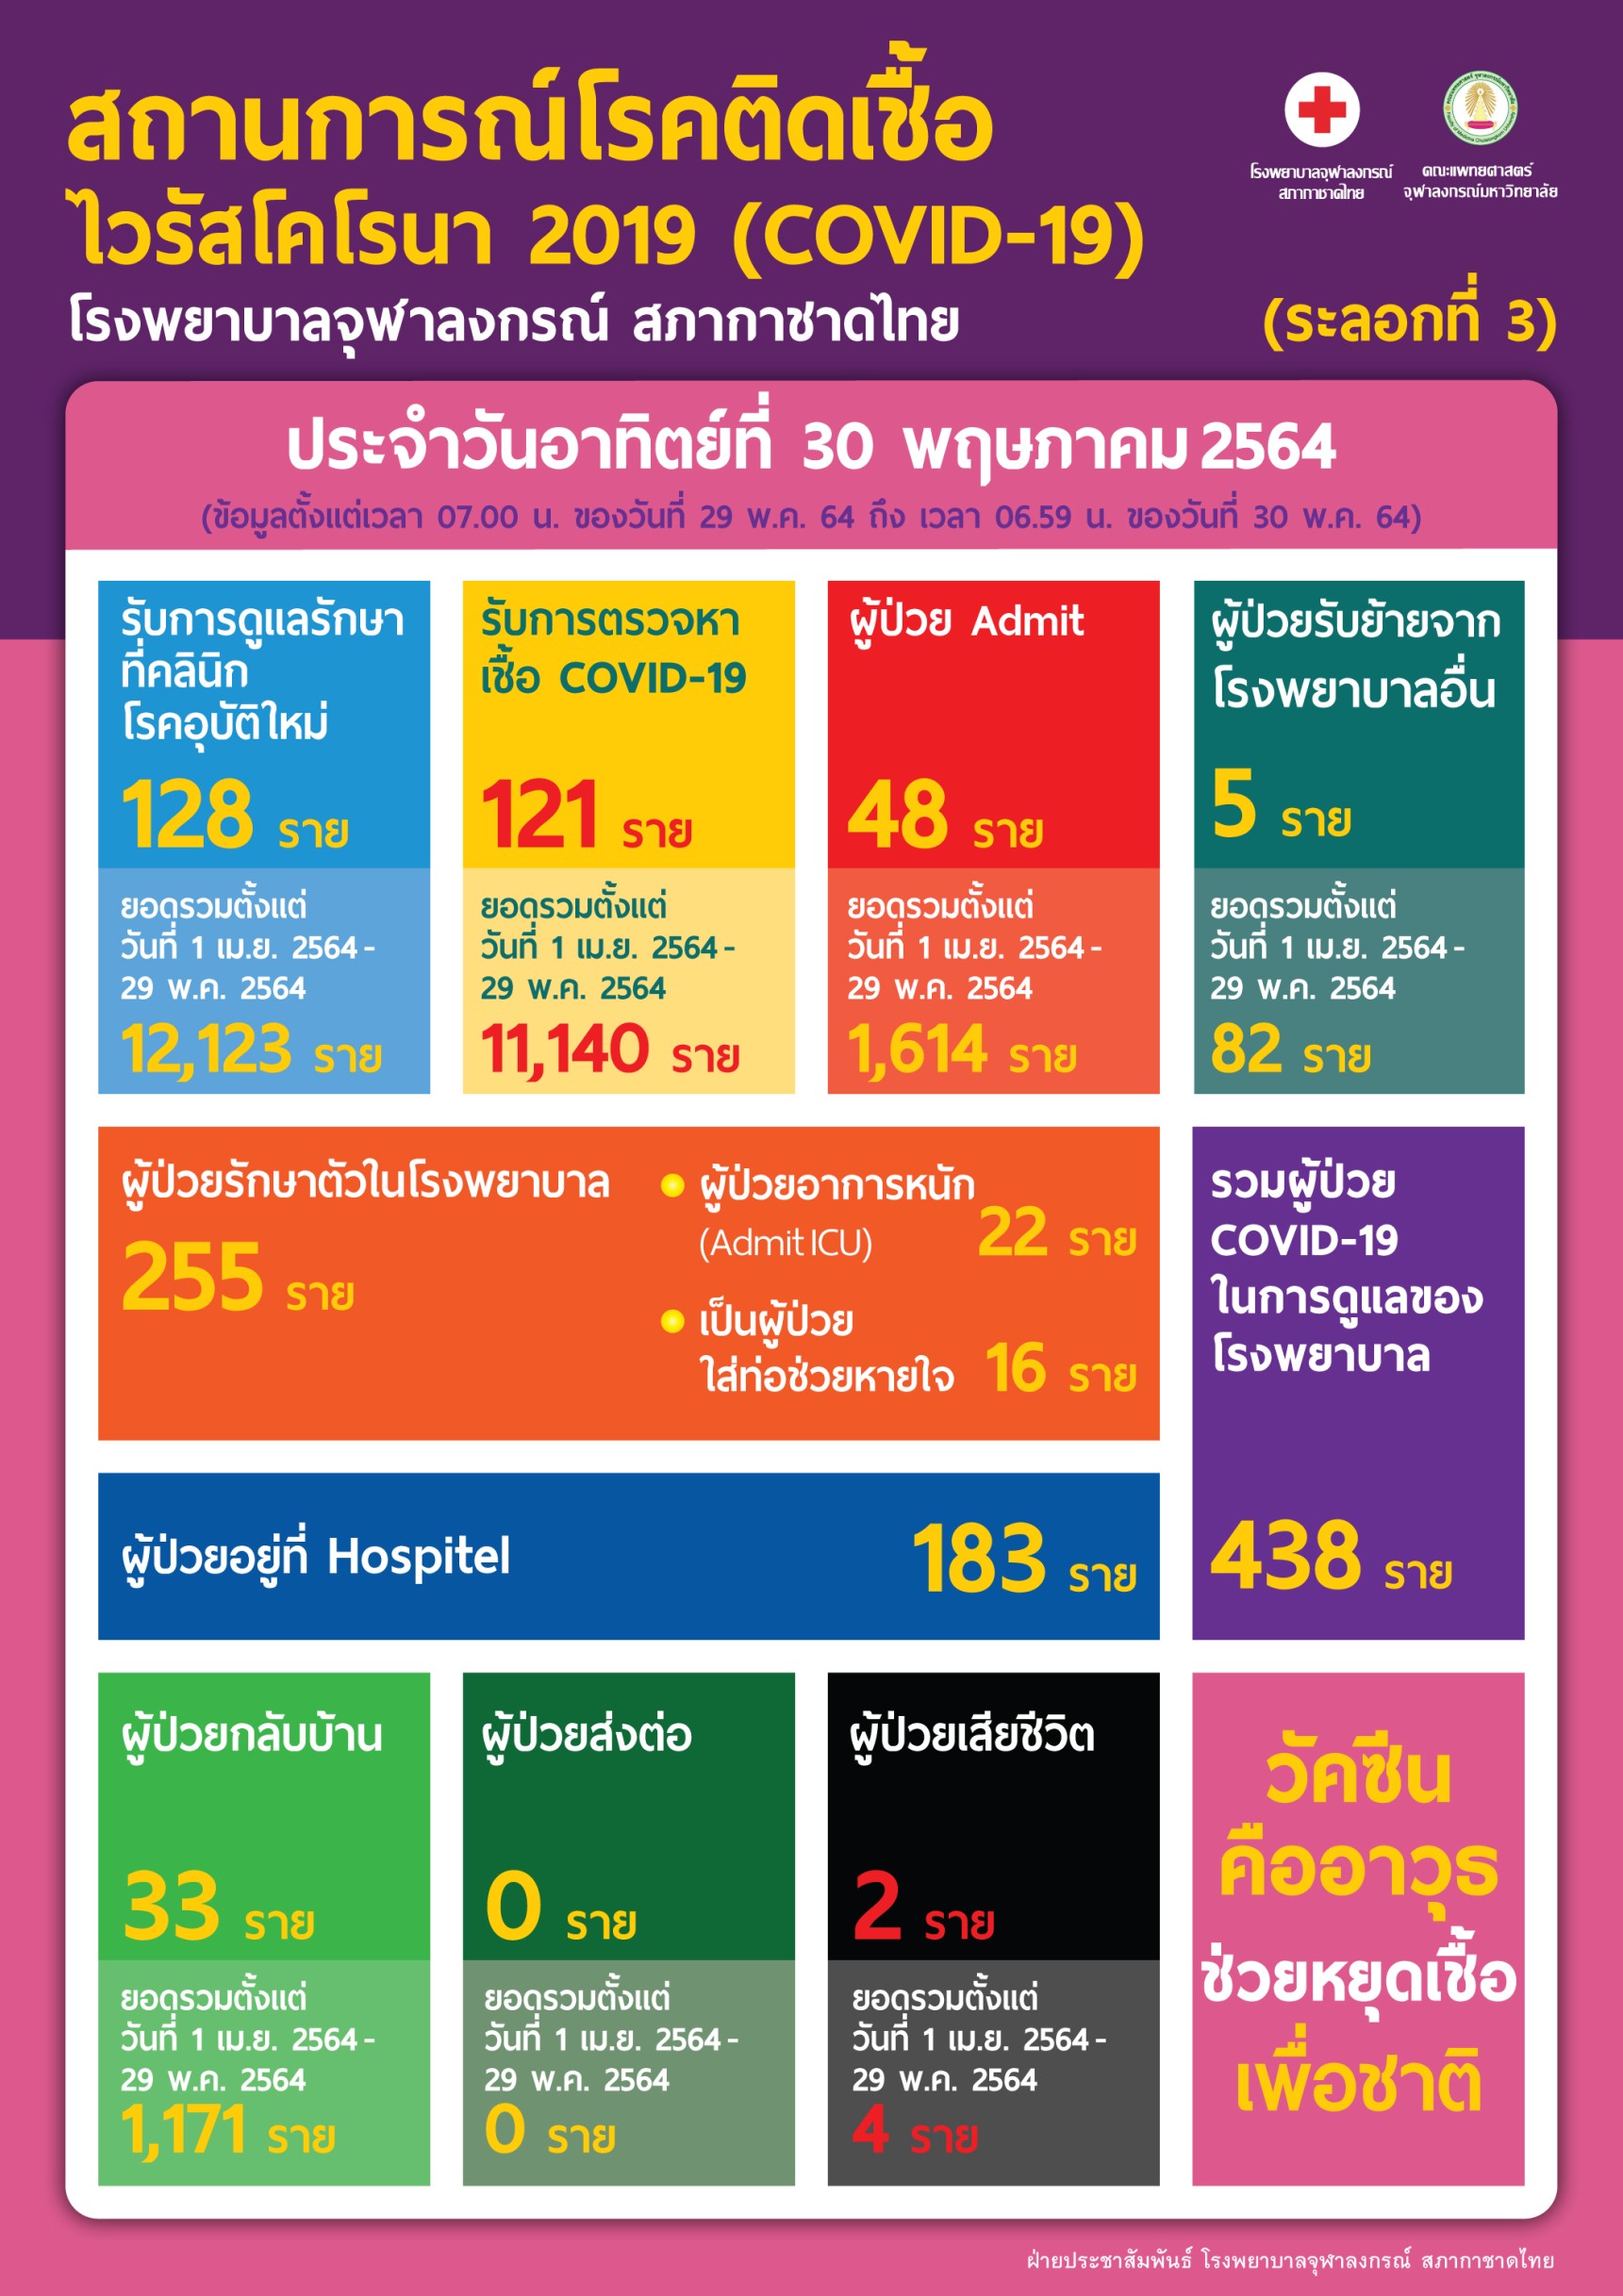 สถานการณ์โรคติดเชื้อ ไวรัสโคโรนา 2019 (COVID-19) (ระลอกที่ 3) โรงพยาบาลจุฬาลงกรณ์ สภากาชาดไทย ประจำวันอาทิตย์ที่ 30 พฤษภาคม 2564